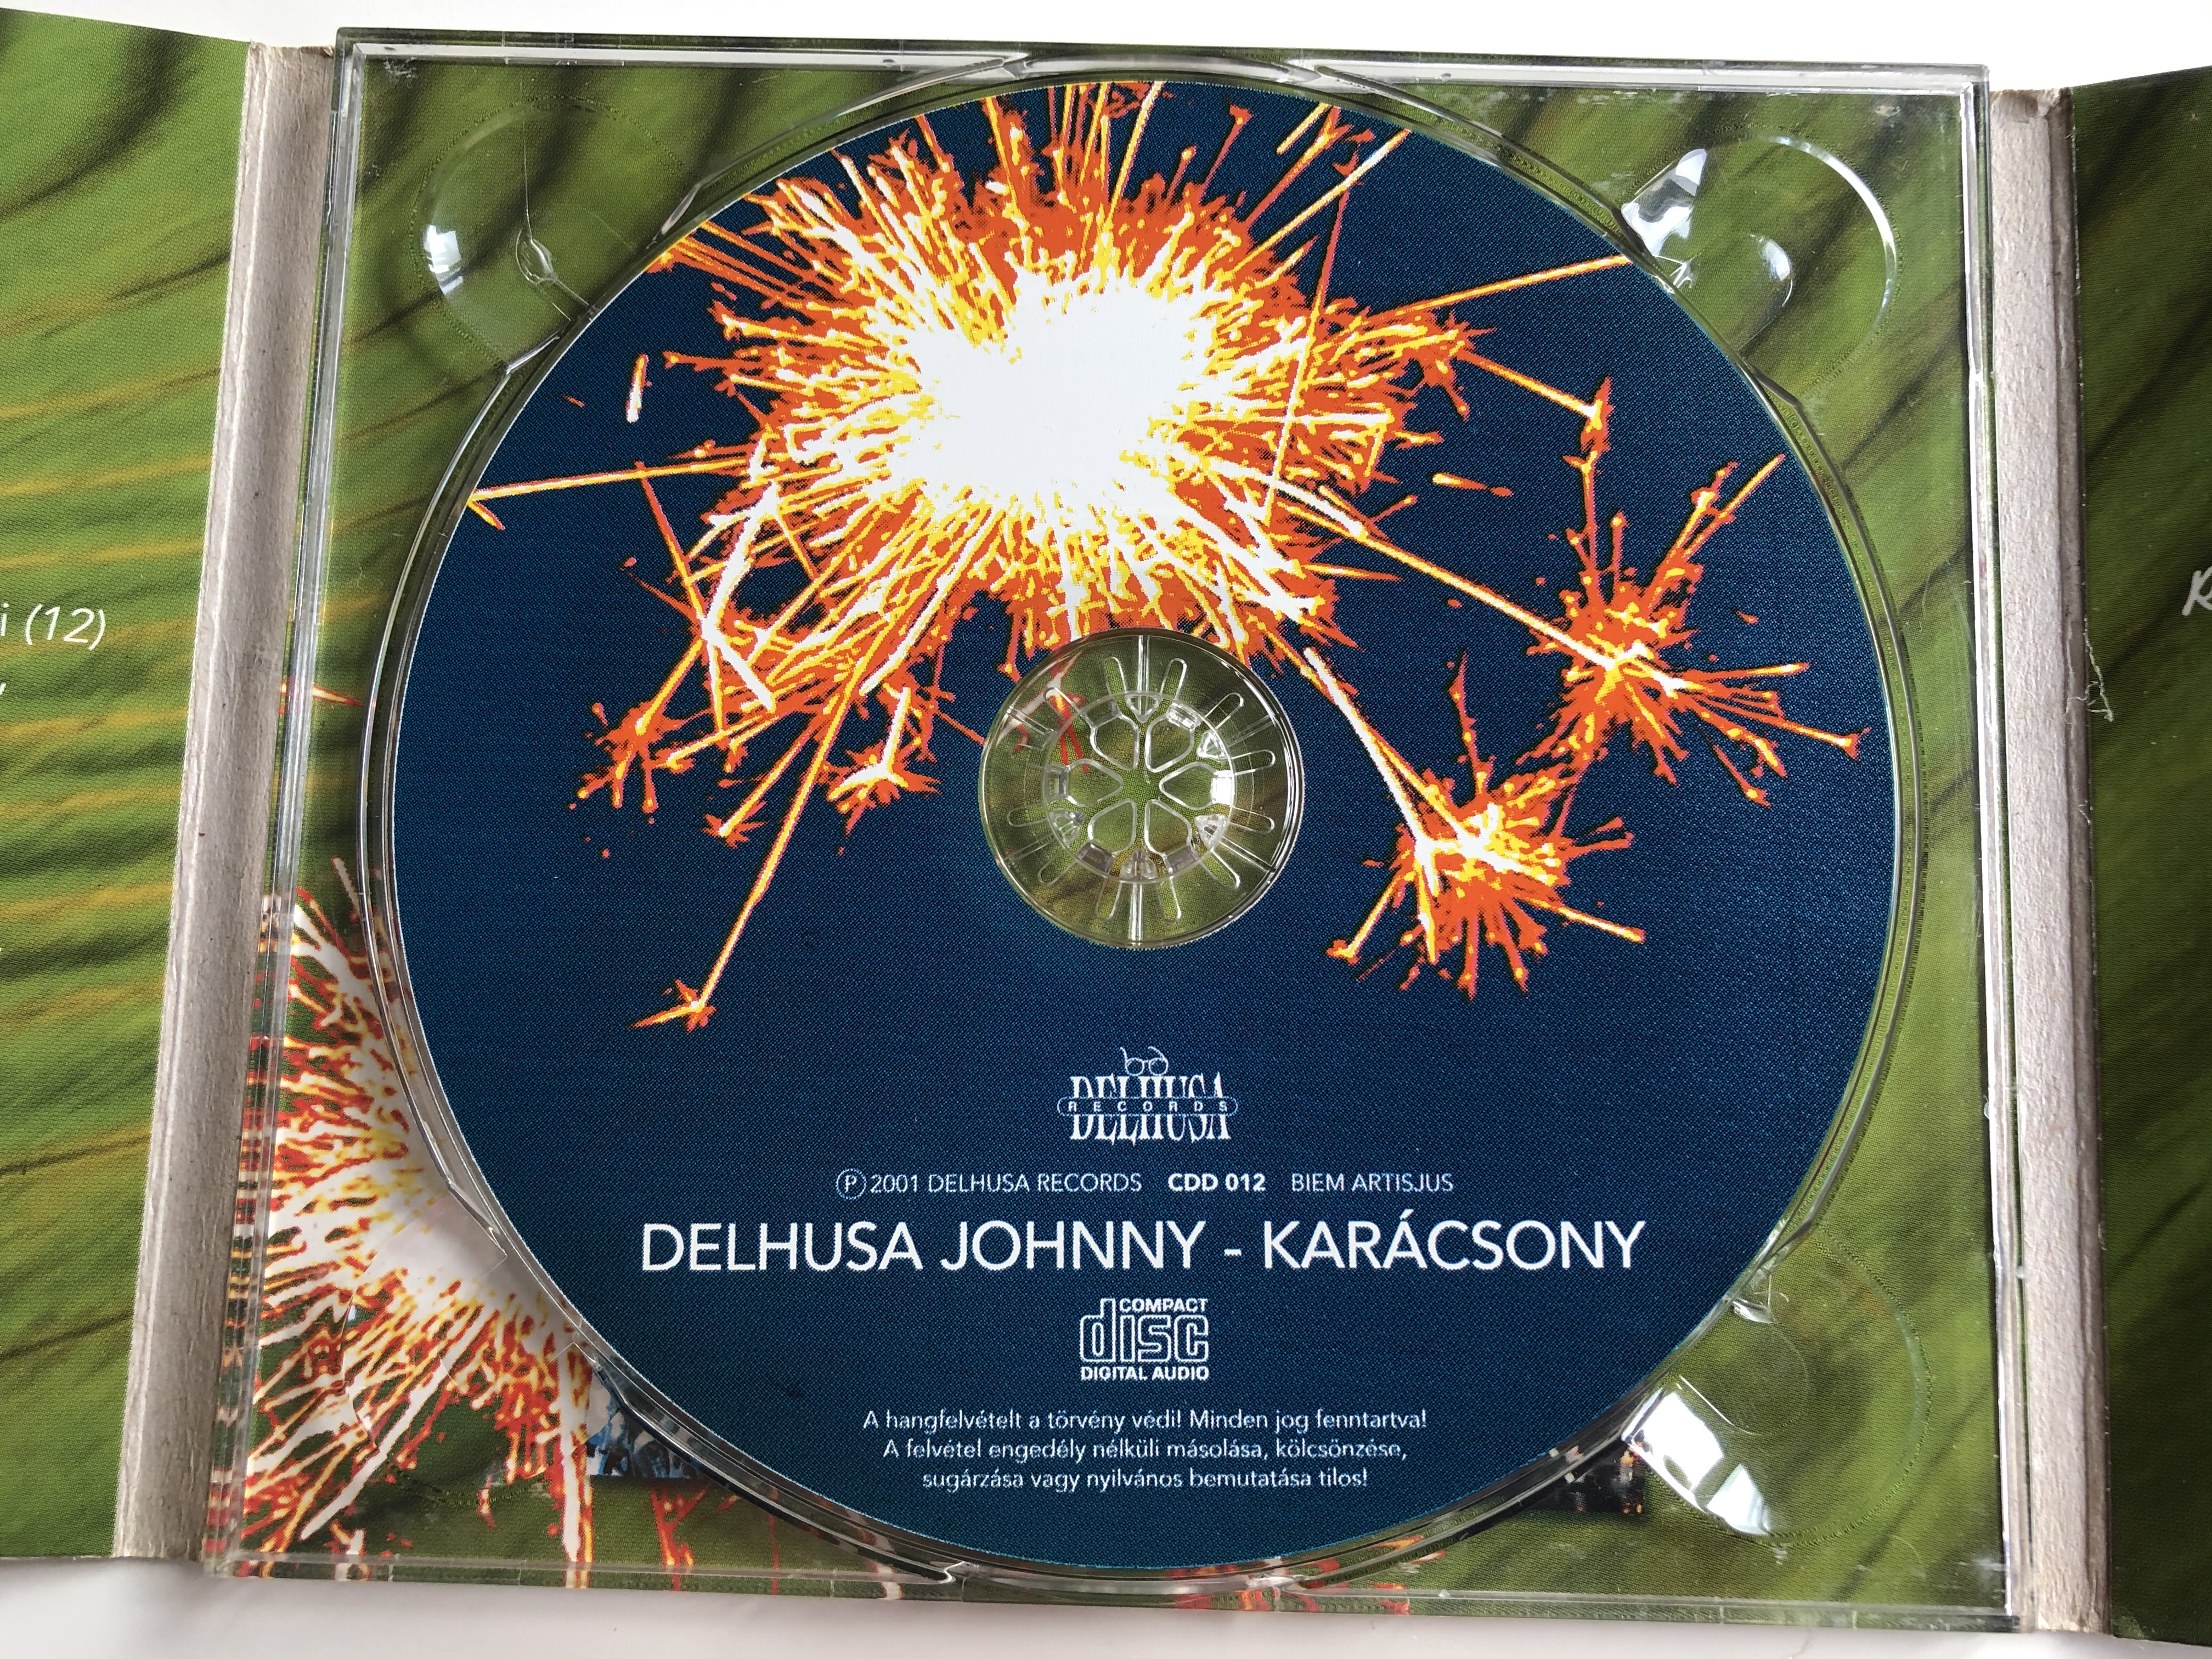 delhusa-johnny-kar-csony-delhusa-records-audio-cd-2001-cdd-012-4-.jpg